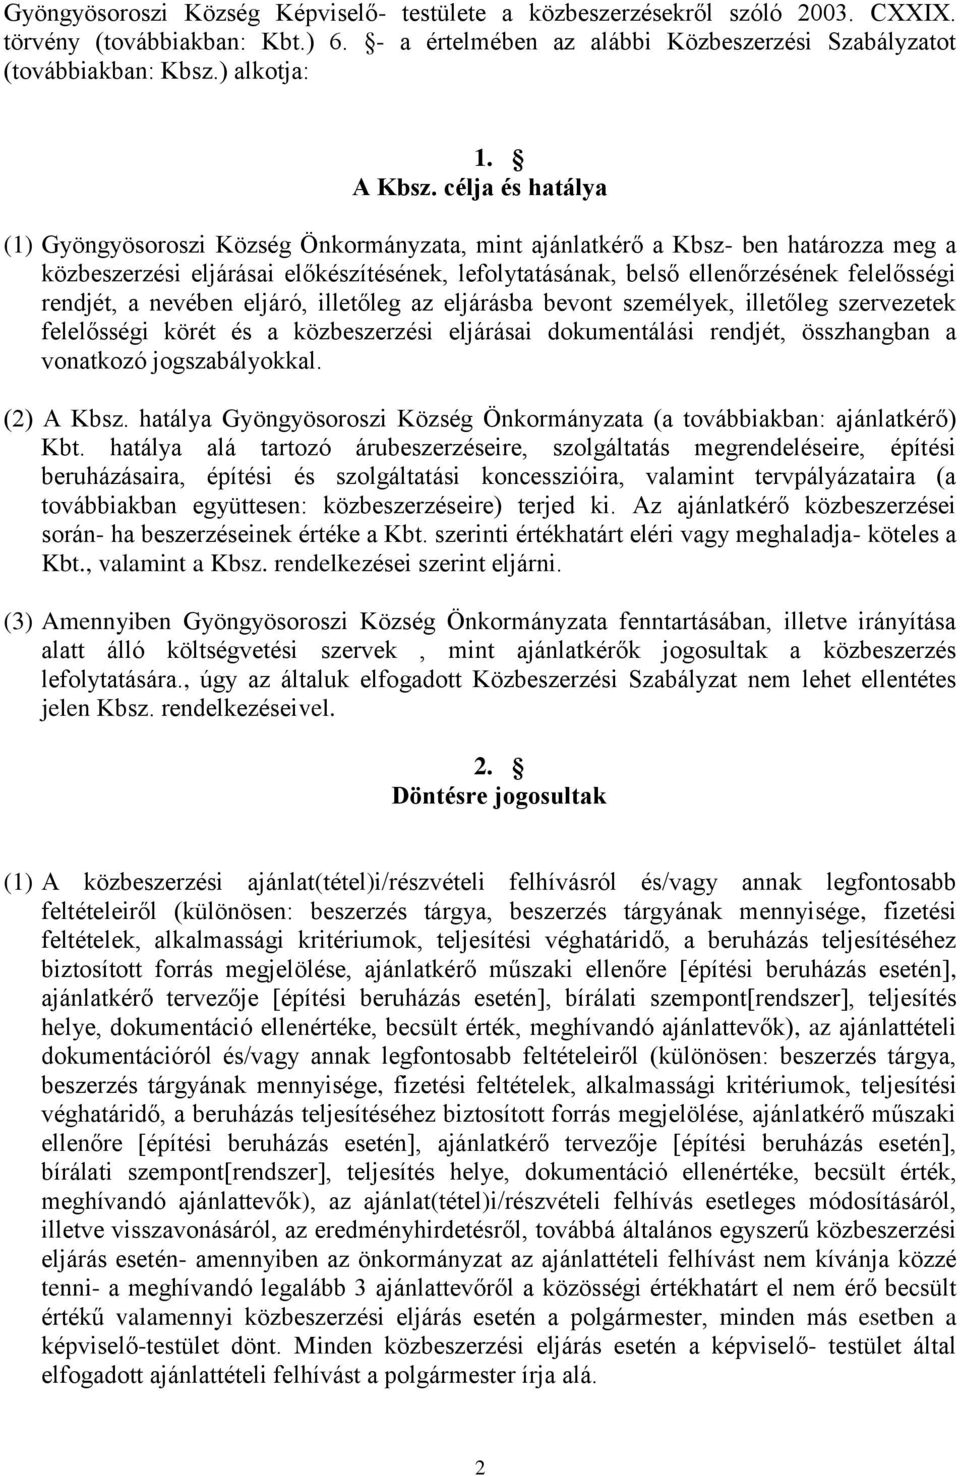 célja és hatálya (1) Gyöngyösoroszi Község Önkormányzata, mint ajánlatkérő a Kbsz- ben határozza meg a közbeszerzési eljárásai előkészítésének, lefolytatásának, belső ellenőrzésének felelősségi